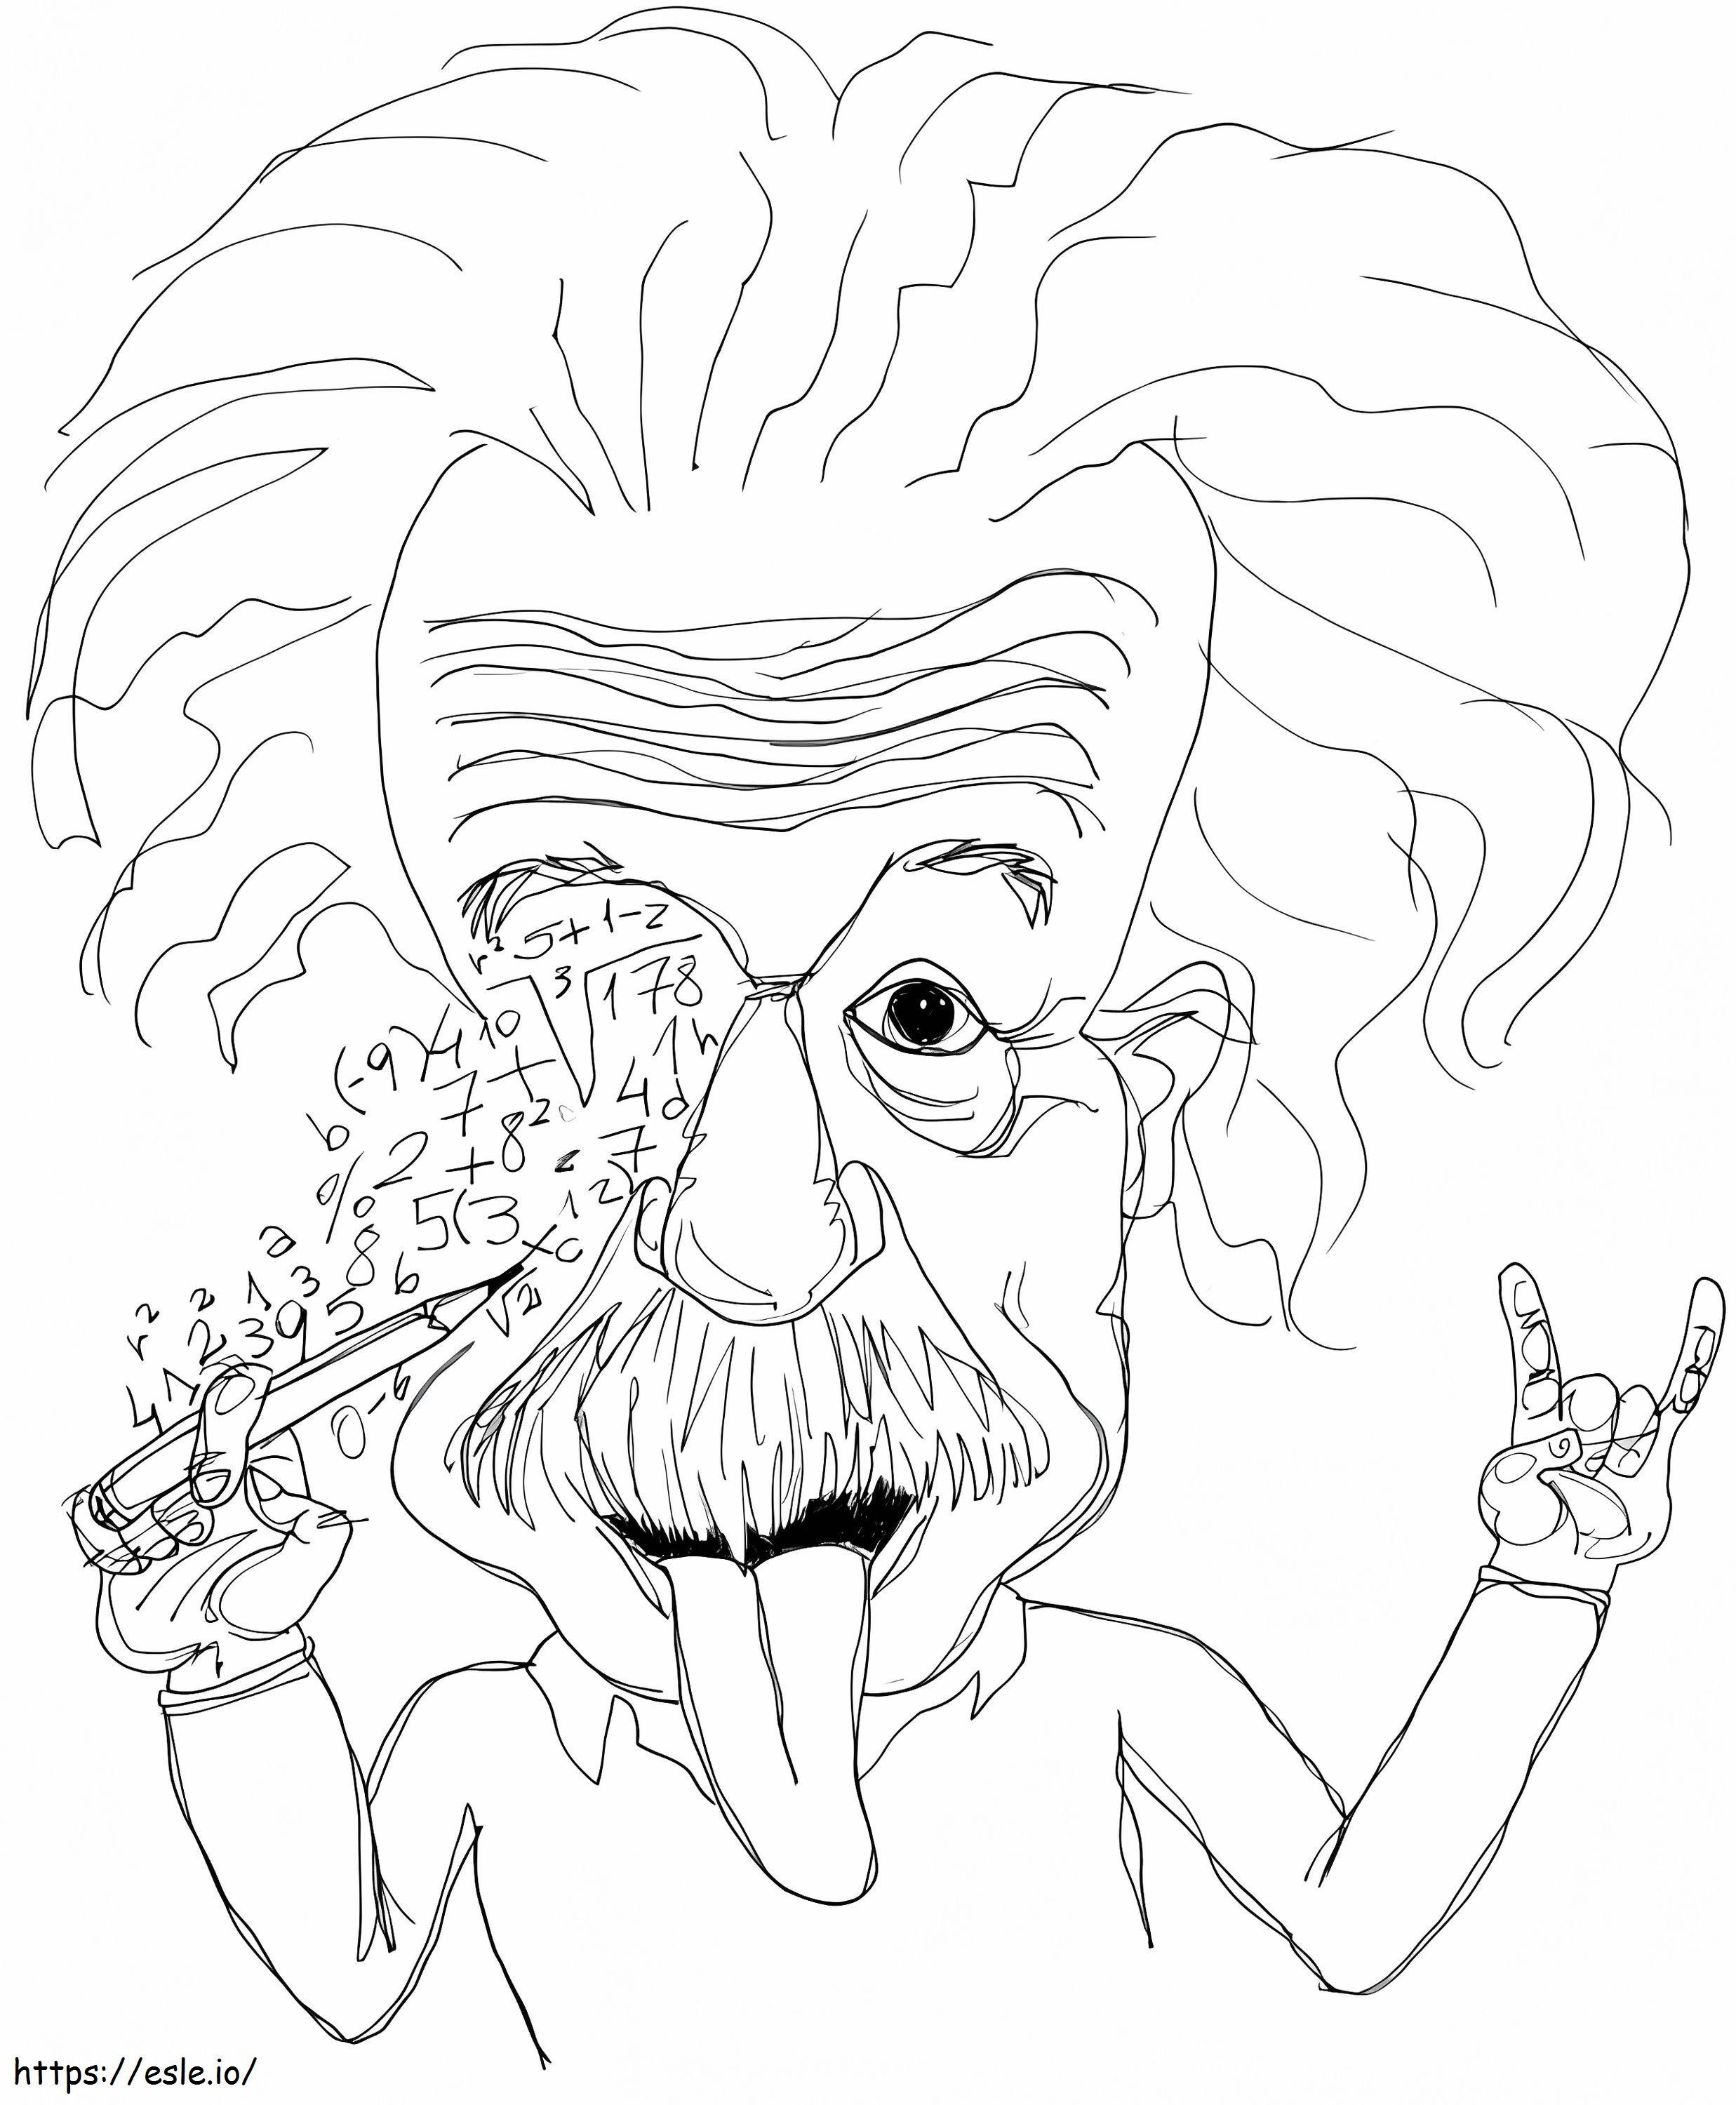 Schizzo di Albert Einstein da colorare